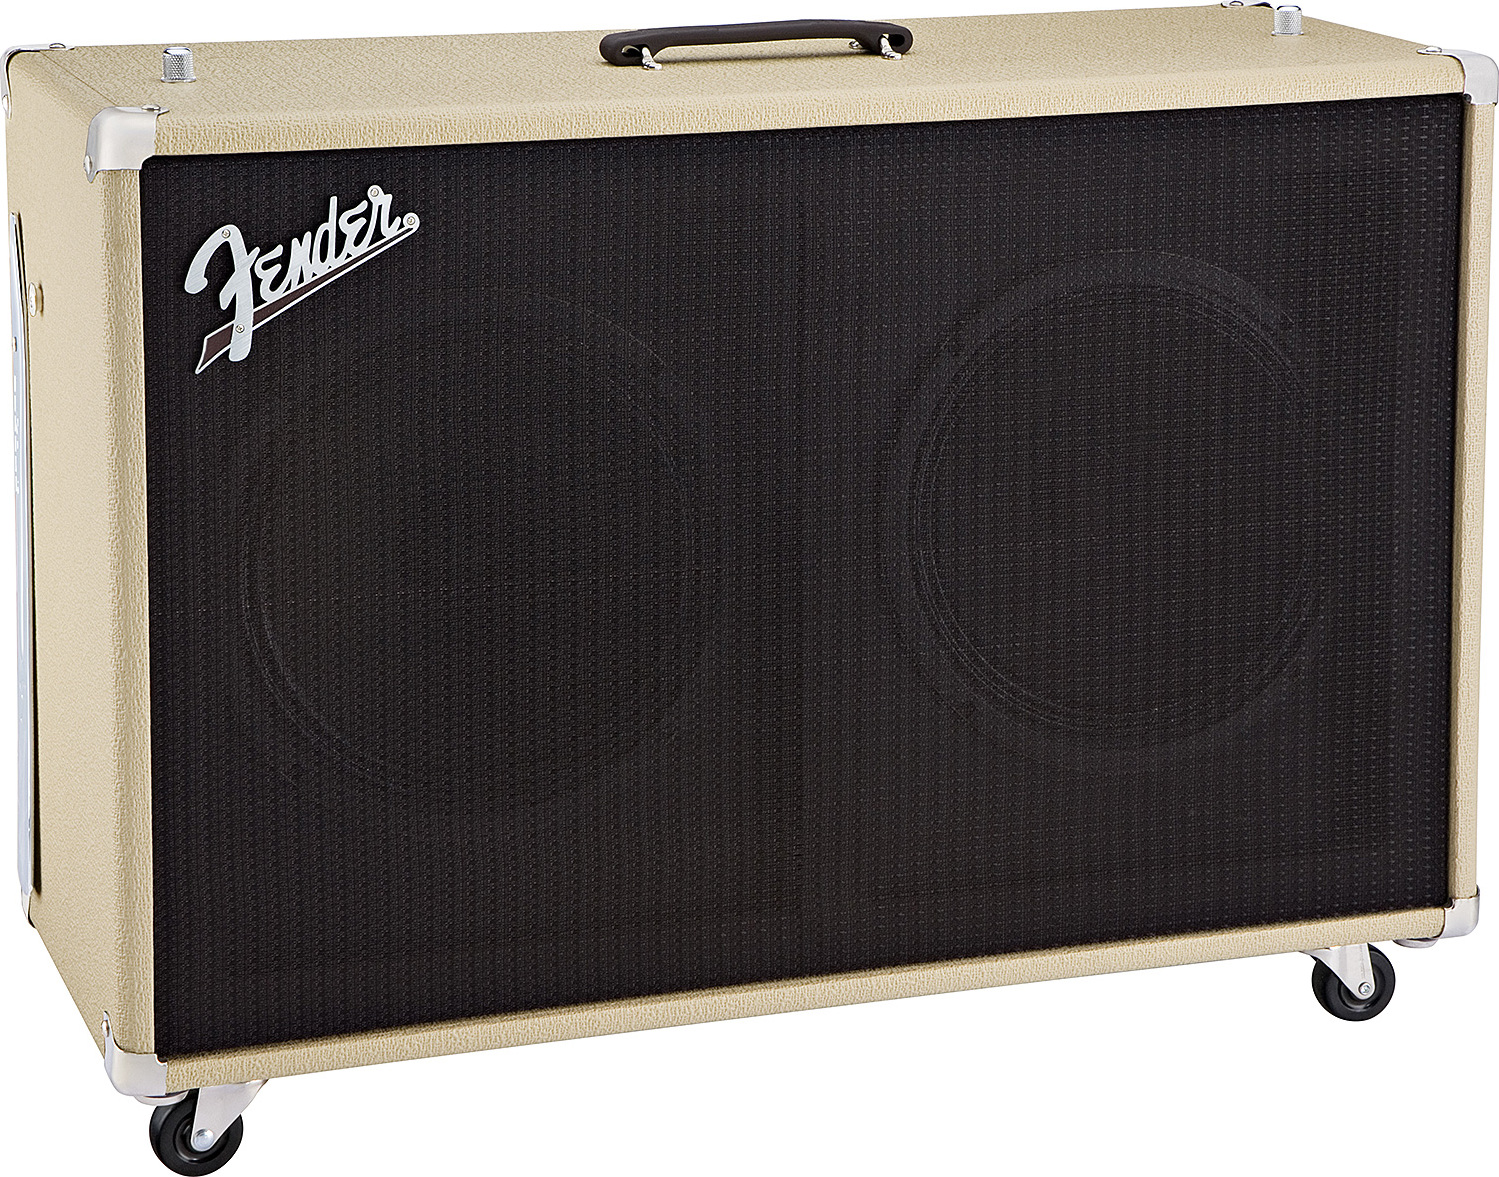 Fender Super Sonic 60 212 Enclosure 2x12 120w Blonde - Boxen für E-Gitarre Verstärker - Main picture